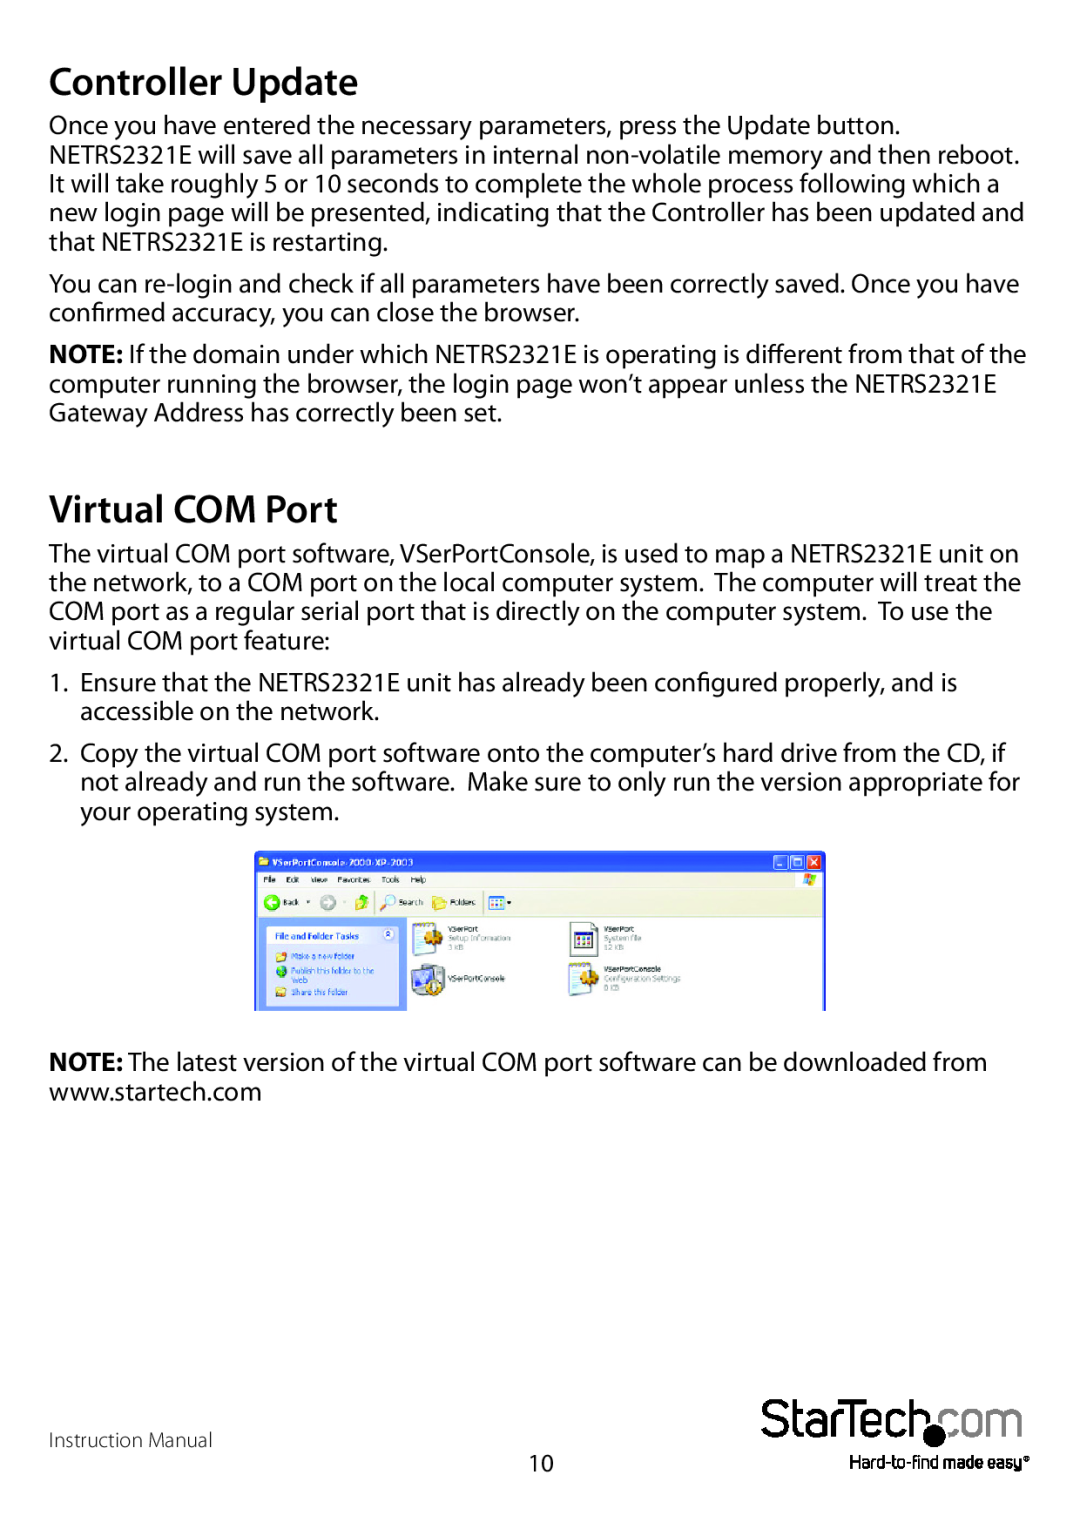 StarTech.com NETRS2321EGB, NETRS2321EEU manual Controller Update, Virtual COM Port 